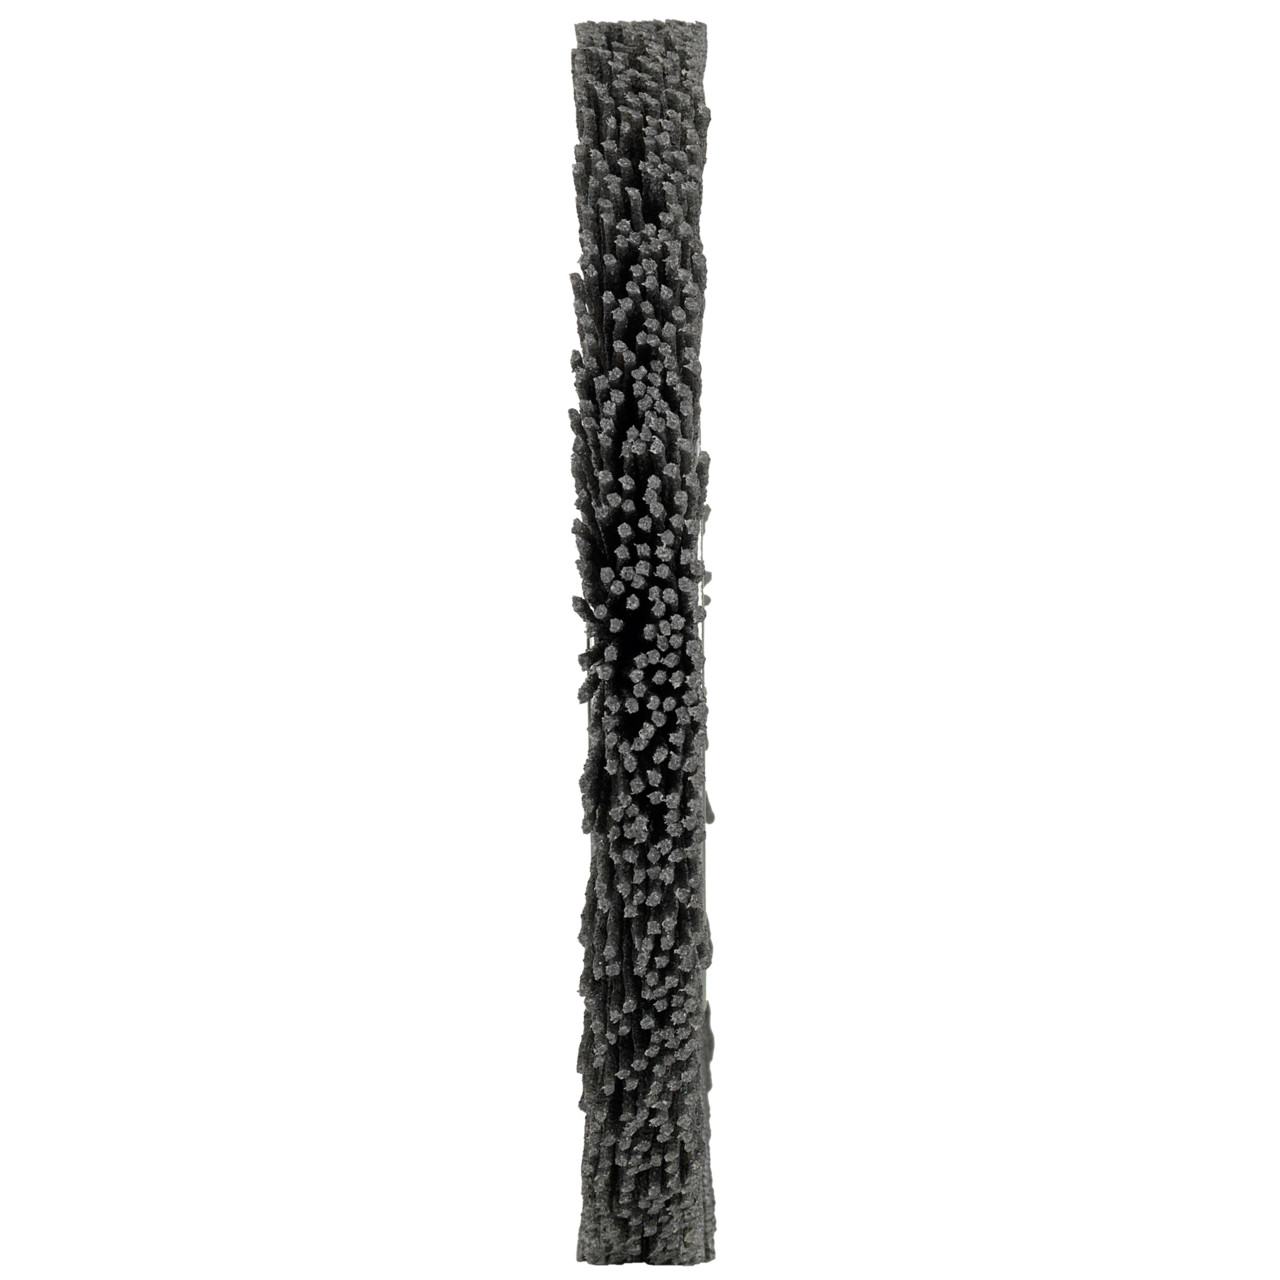 Tyrolit spazzole rotonde DxLxH 150x13x34x32 Per uso universale, forma: 1RDK - (spazzole rotonde), Art. 34043578